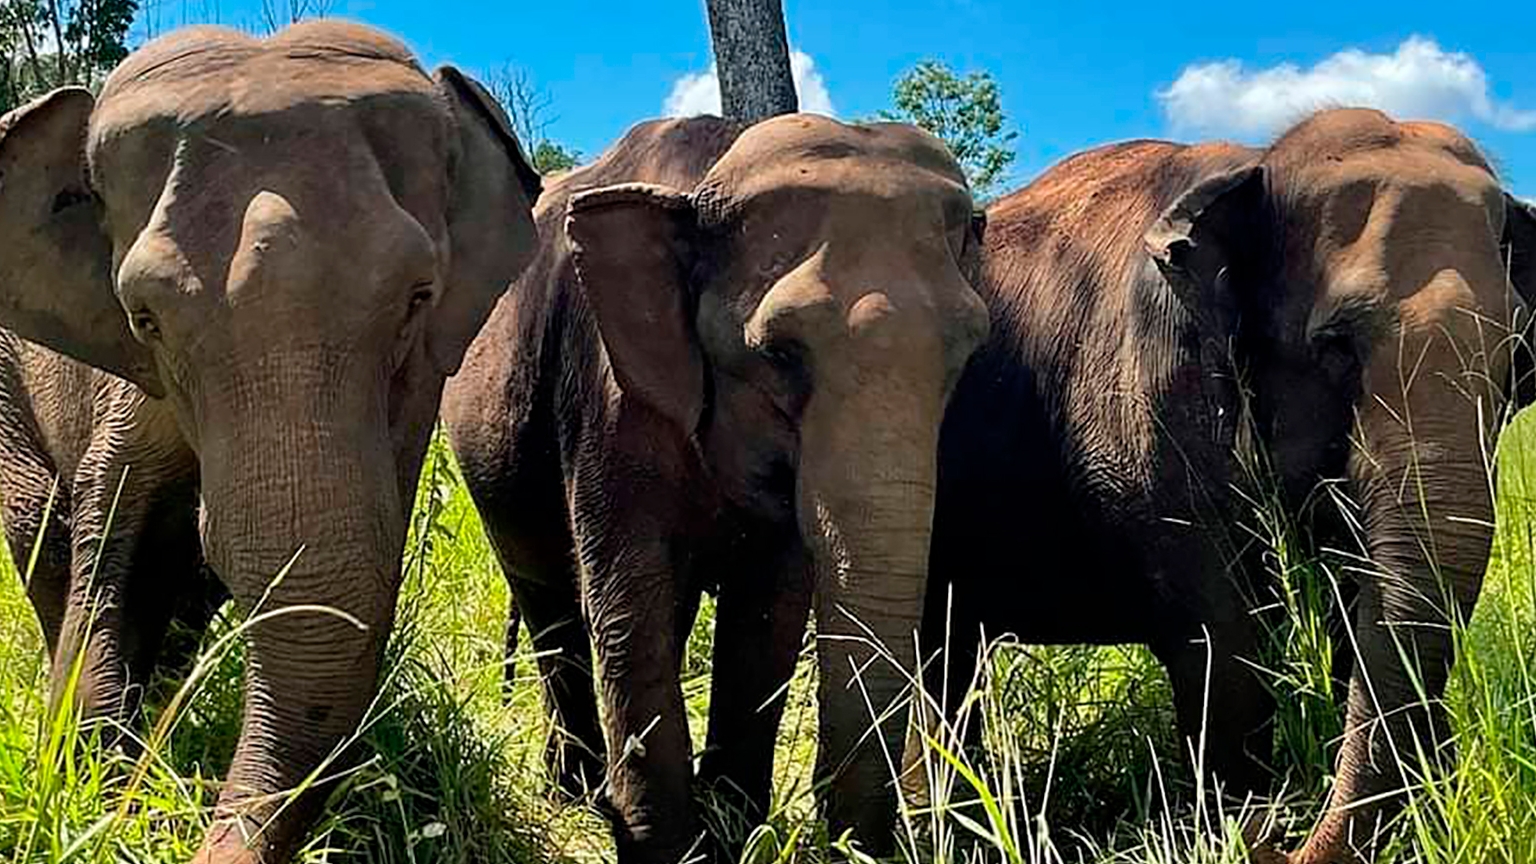 Historia de la elefanta que puso a los humanos a pensar cómo hay que tratar a otros seres vivos